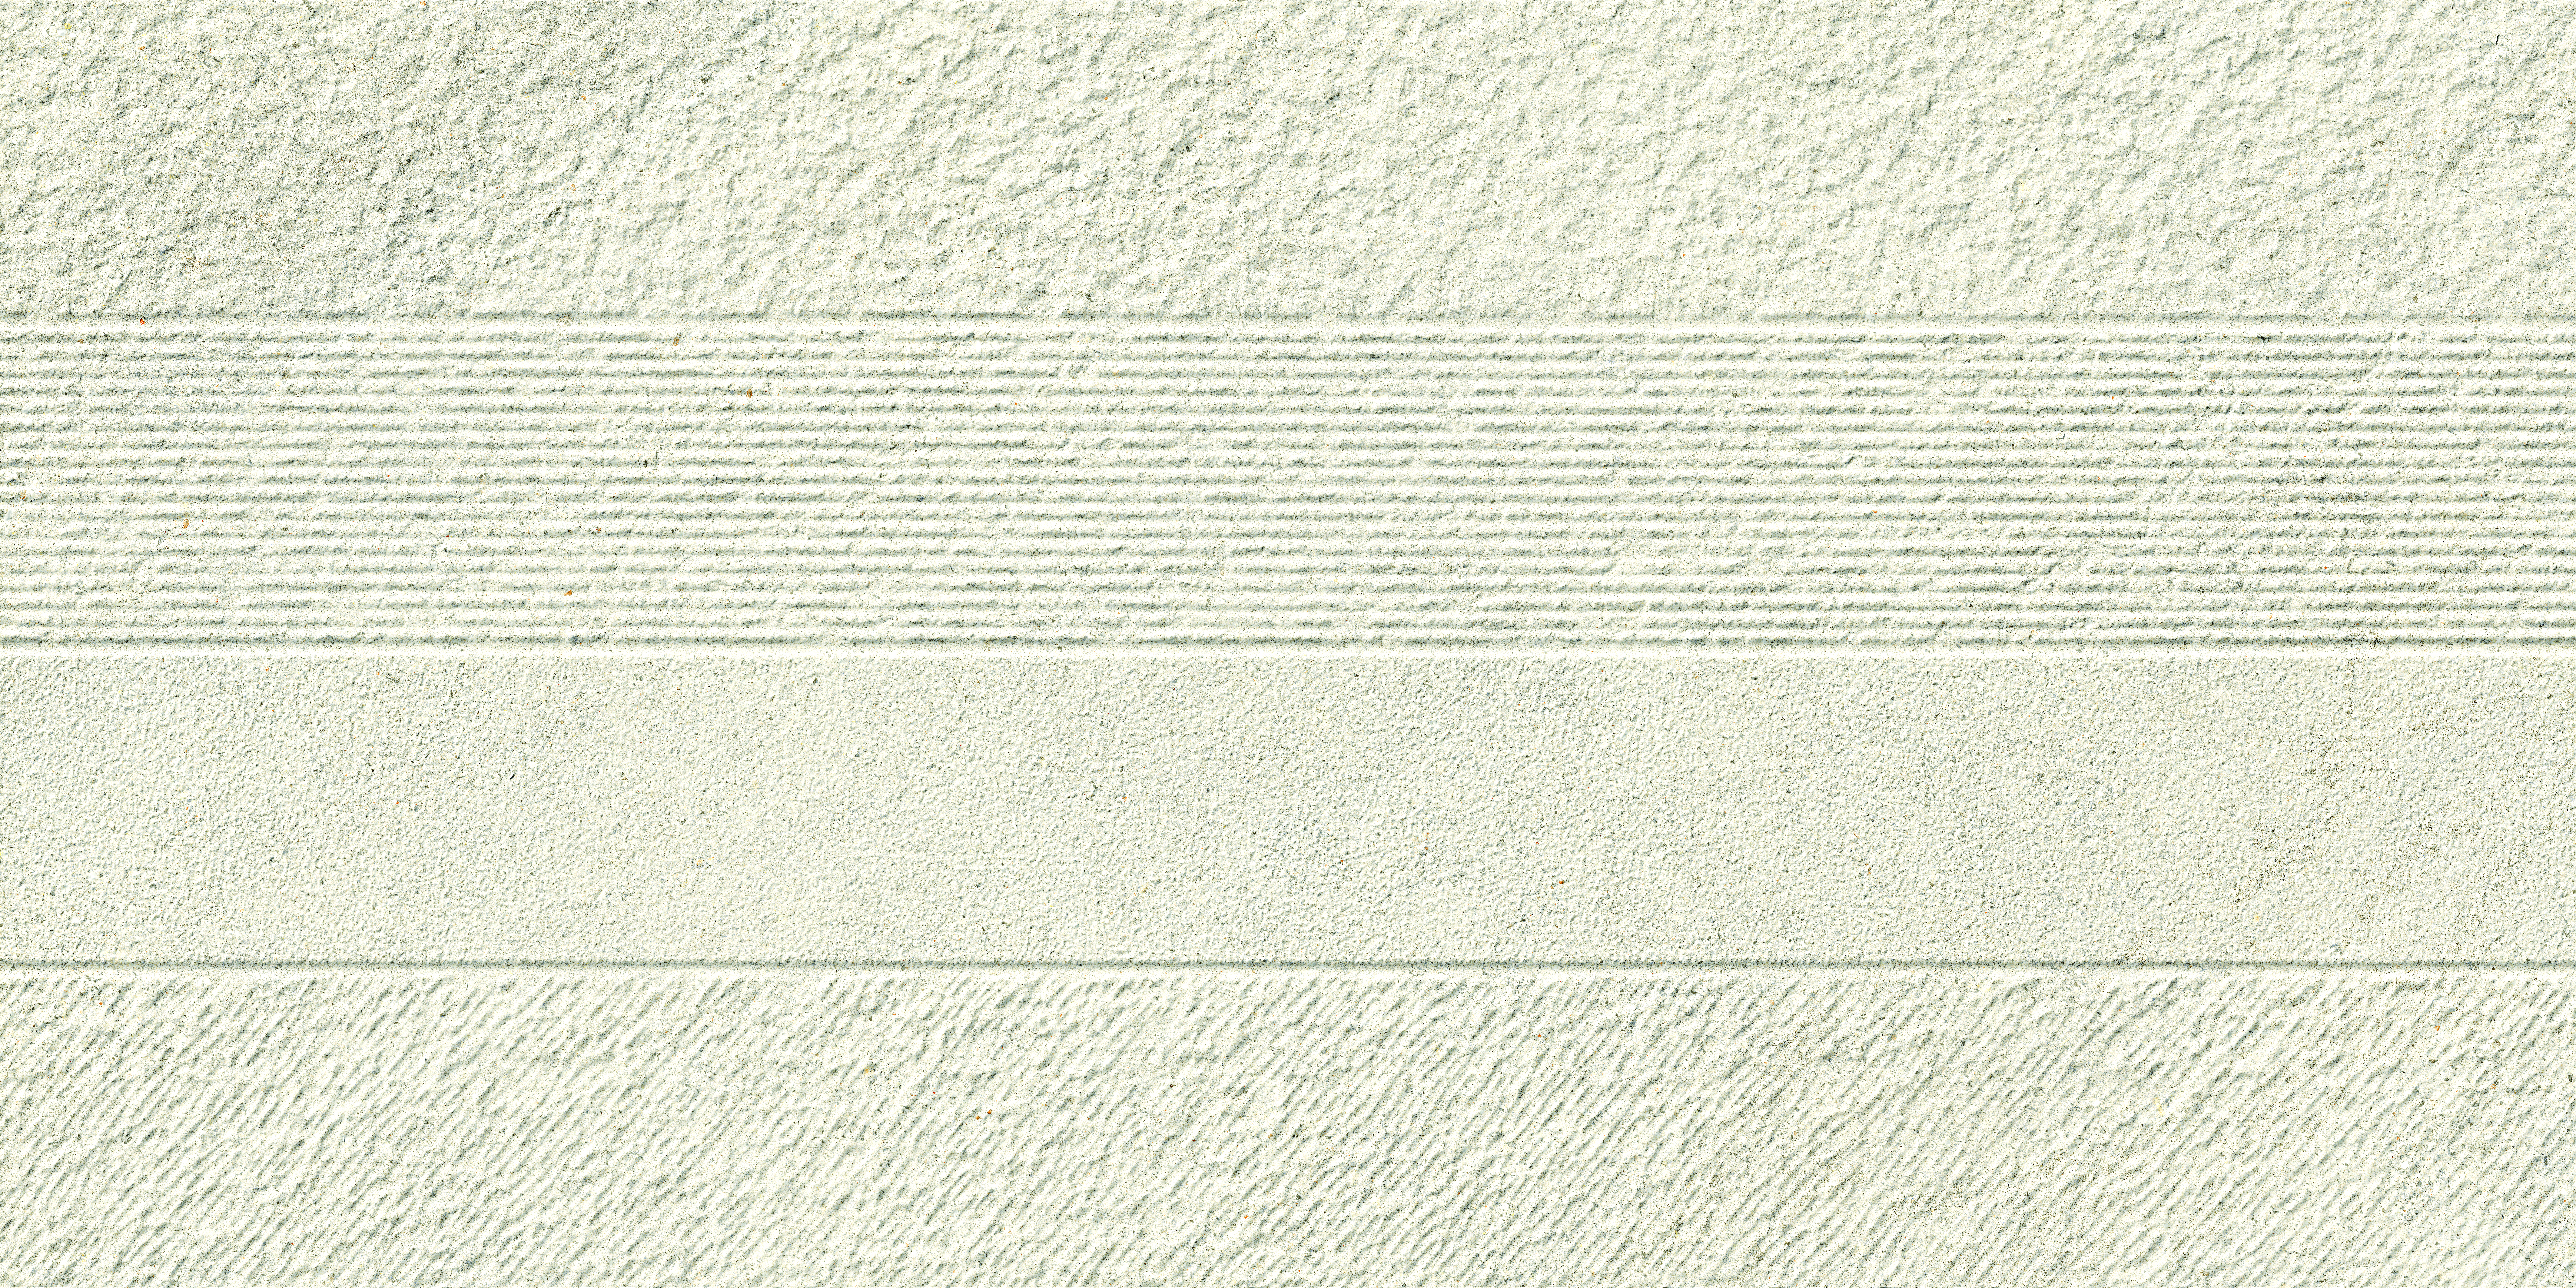 Serenissima Eclettica Bianco Naturale Frammenti 1081730 60x120cm rectified 9,5mm